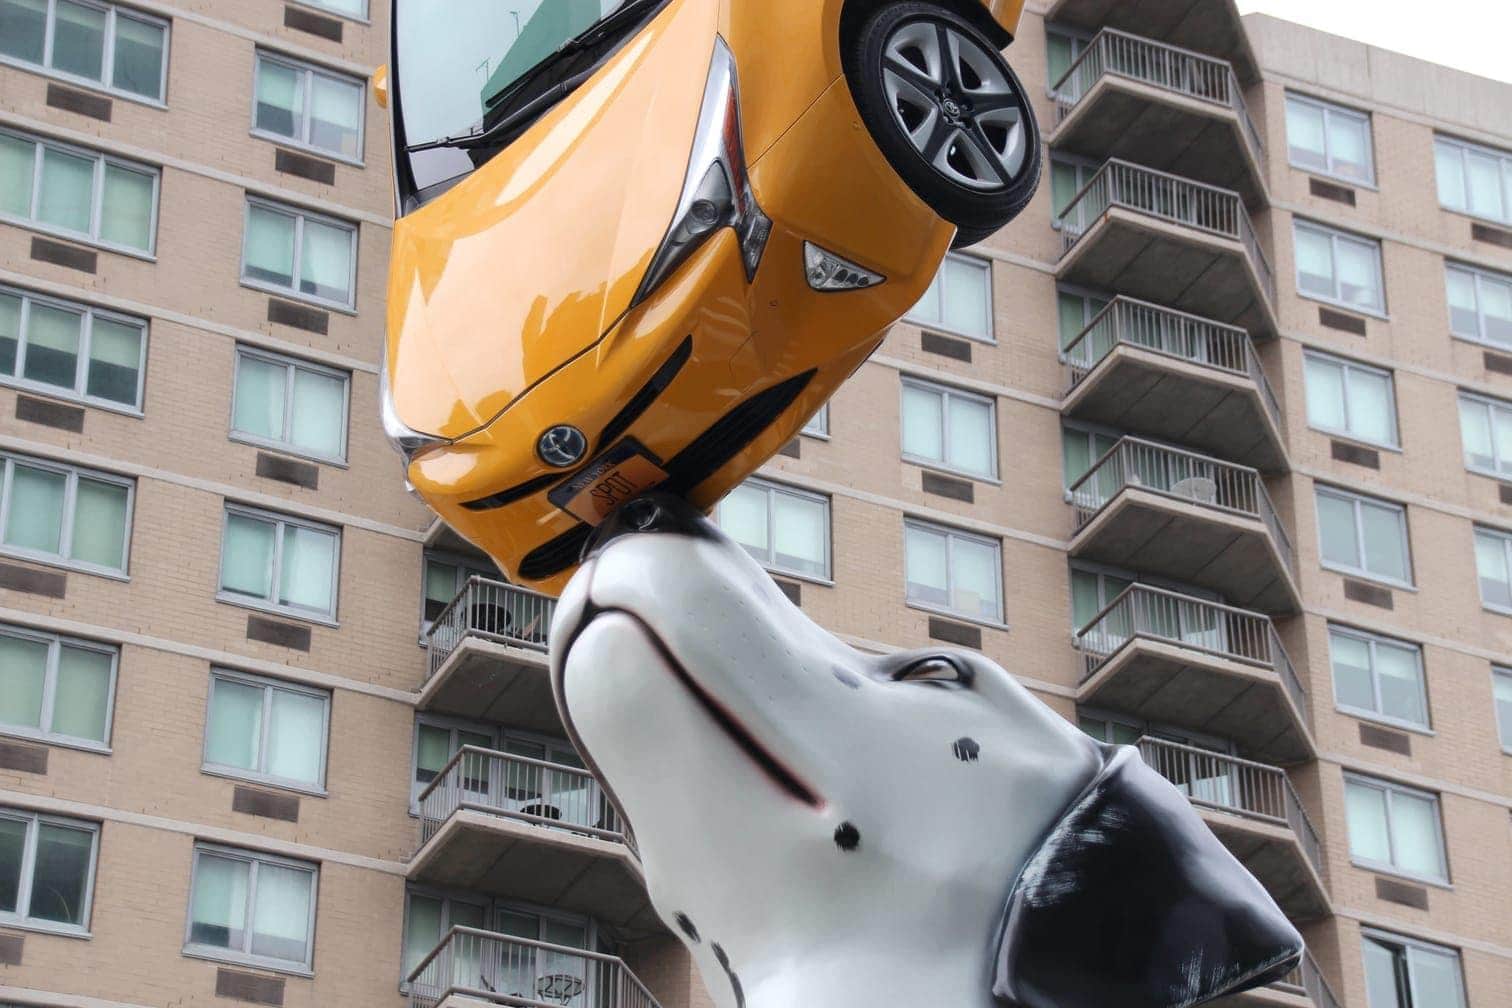 New York Hund balanciert Taxi auf der Nase